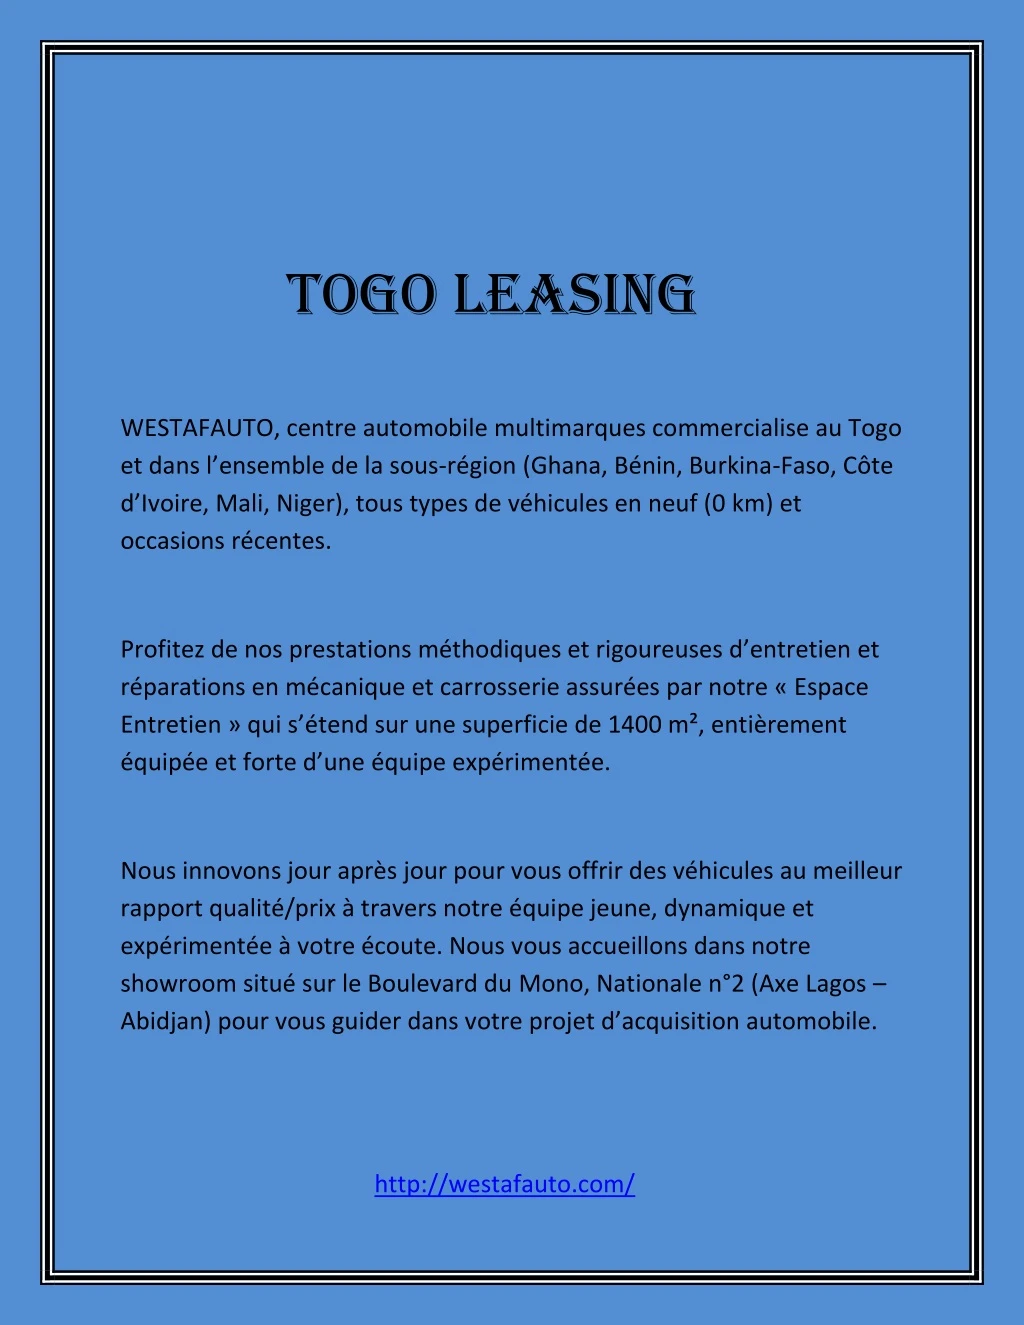 togo leasing